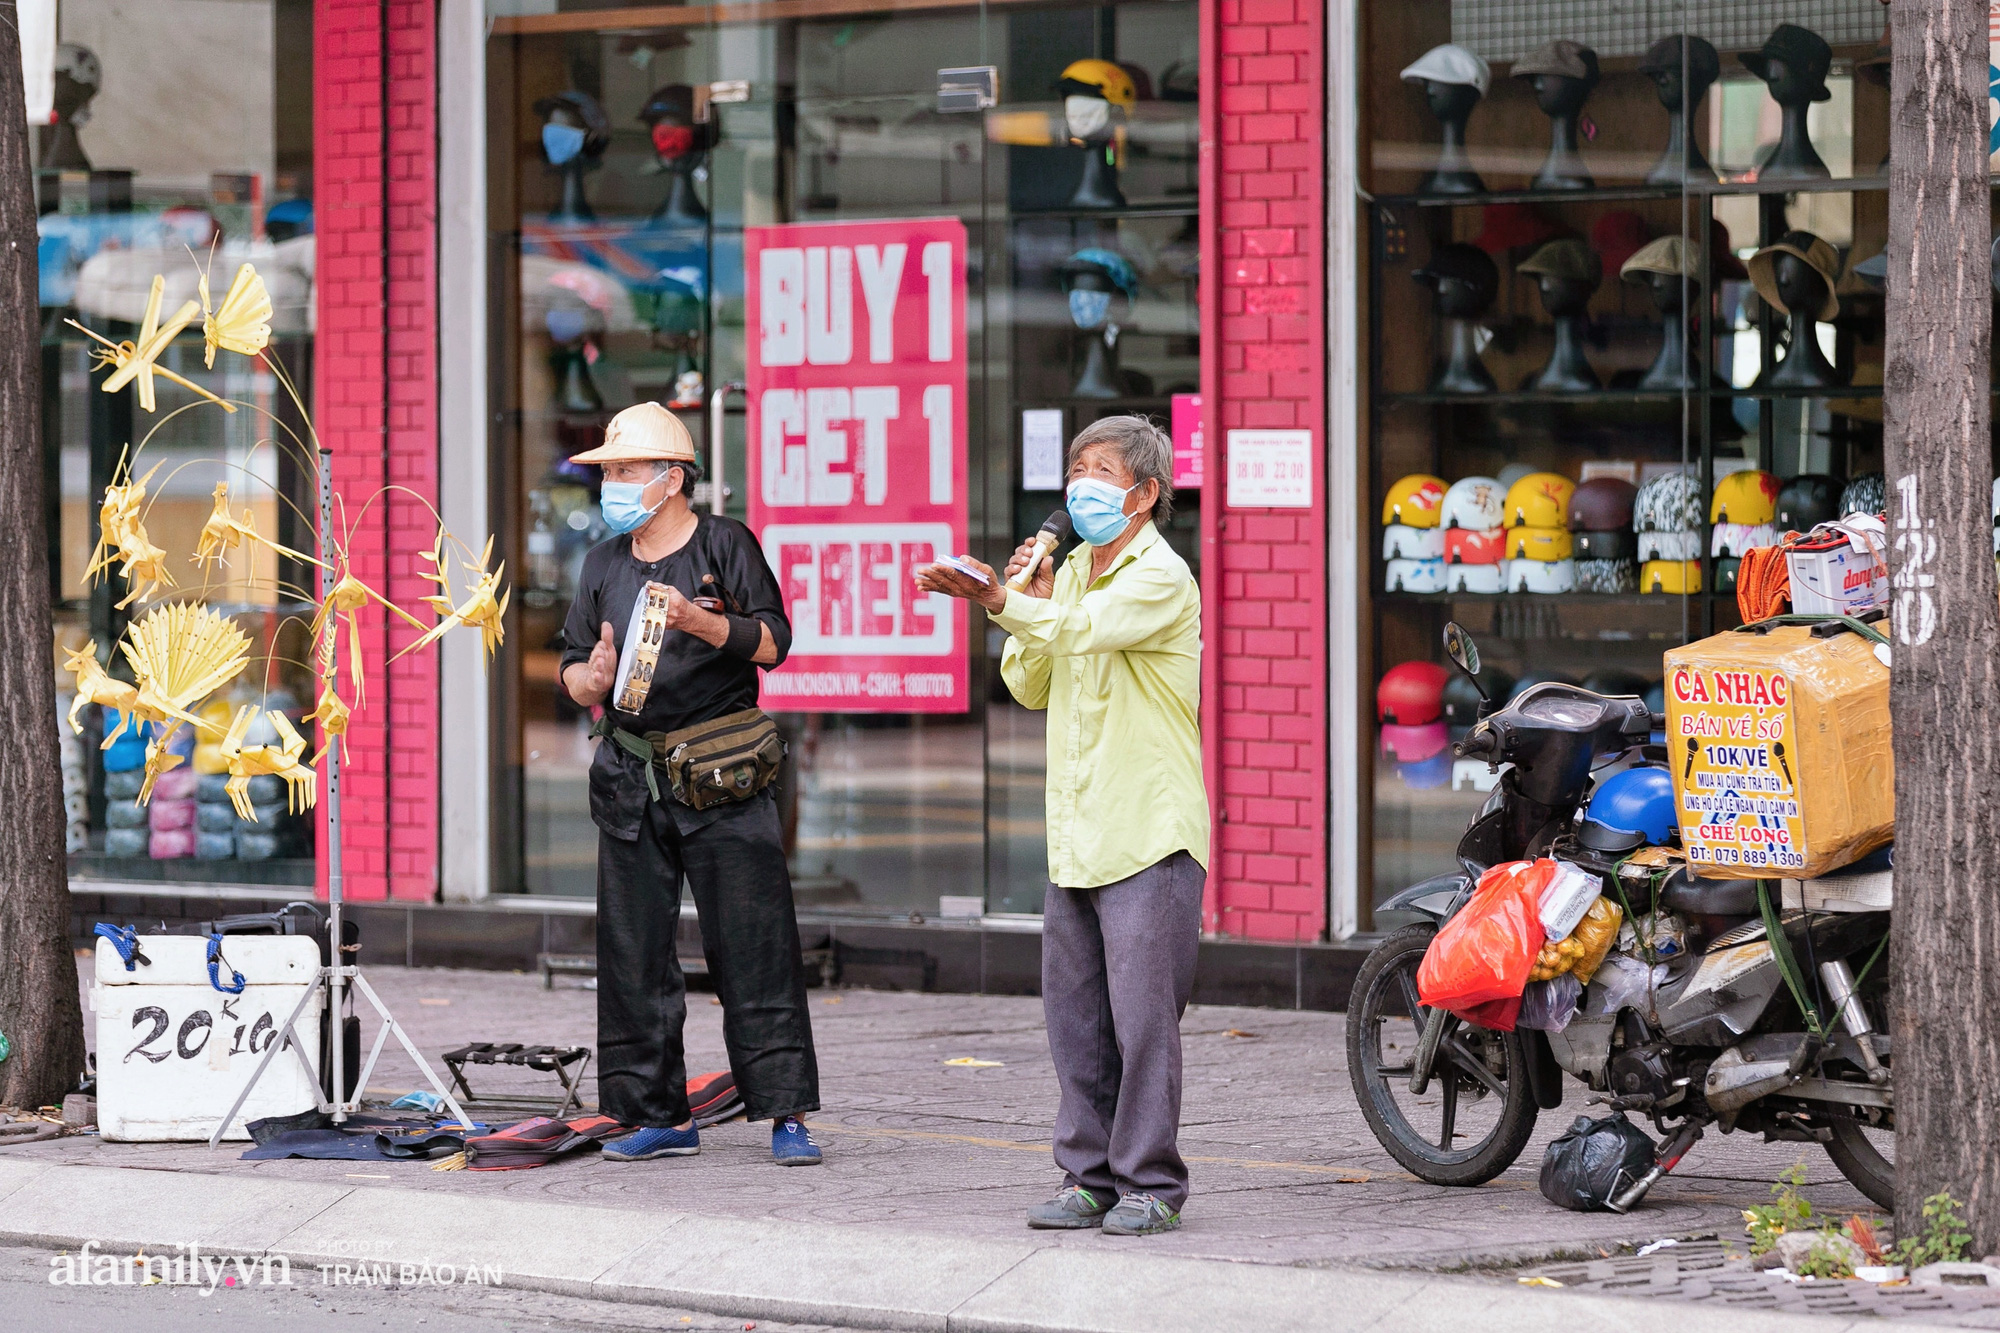 Hai cụ ông xa lạ tự dưng thành tri kỷ ở Sài Gòn mùa dịch, cùng đứng hát ca nhảy múa giữa phố xá để có tiền lo cho gia đình - Ảnh 3.